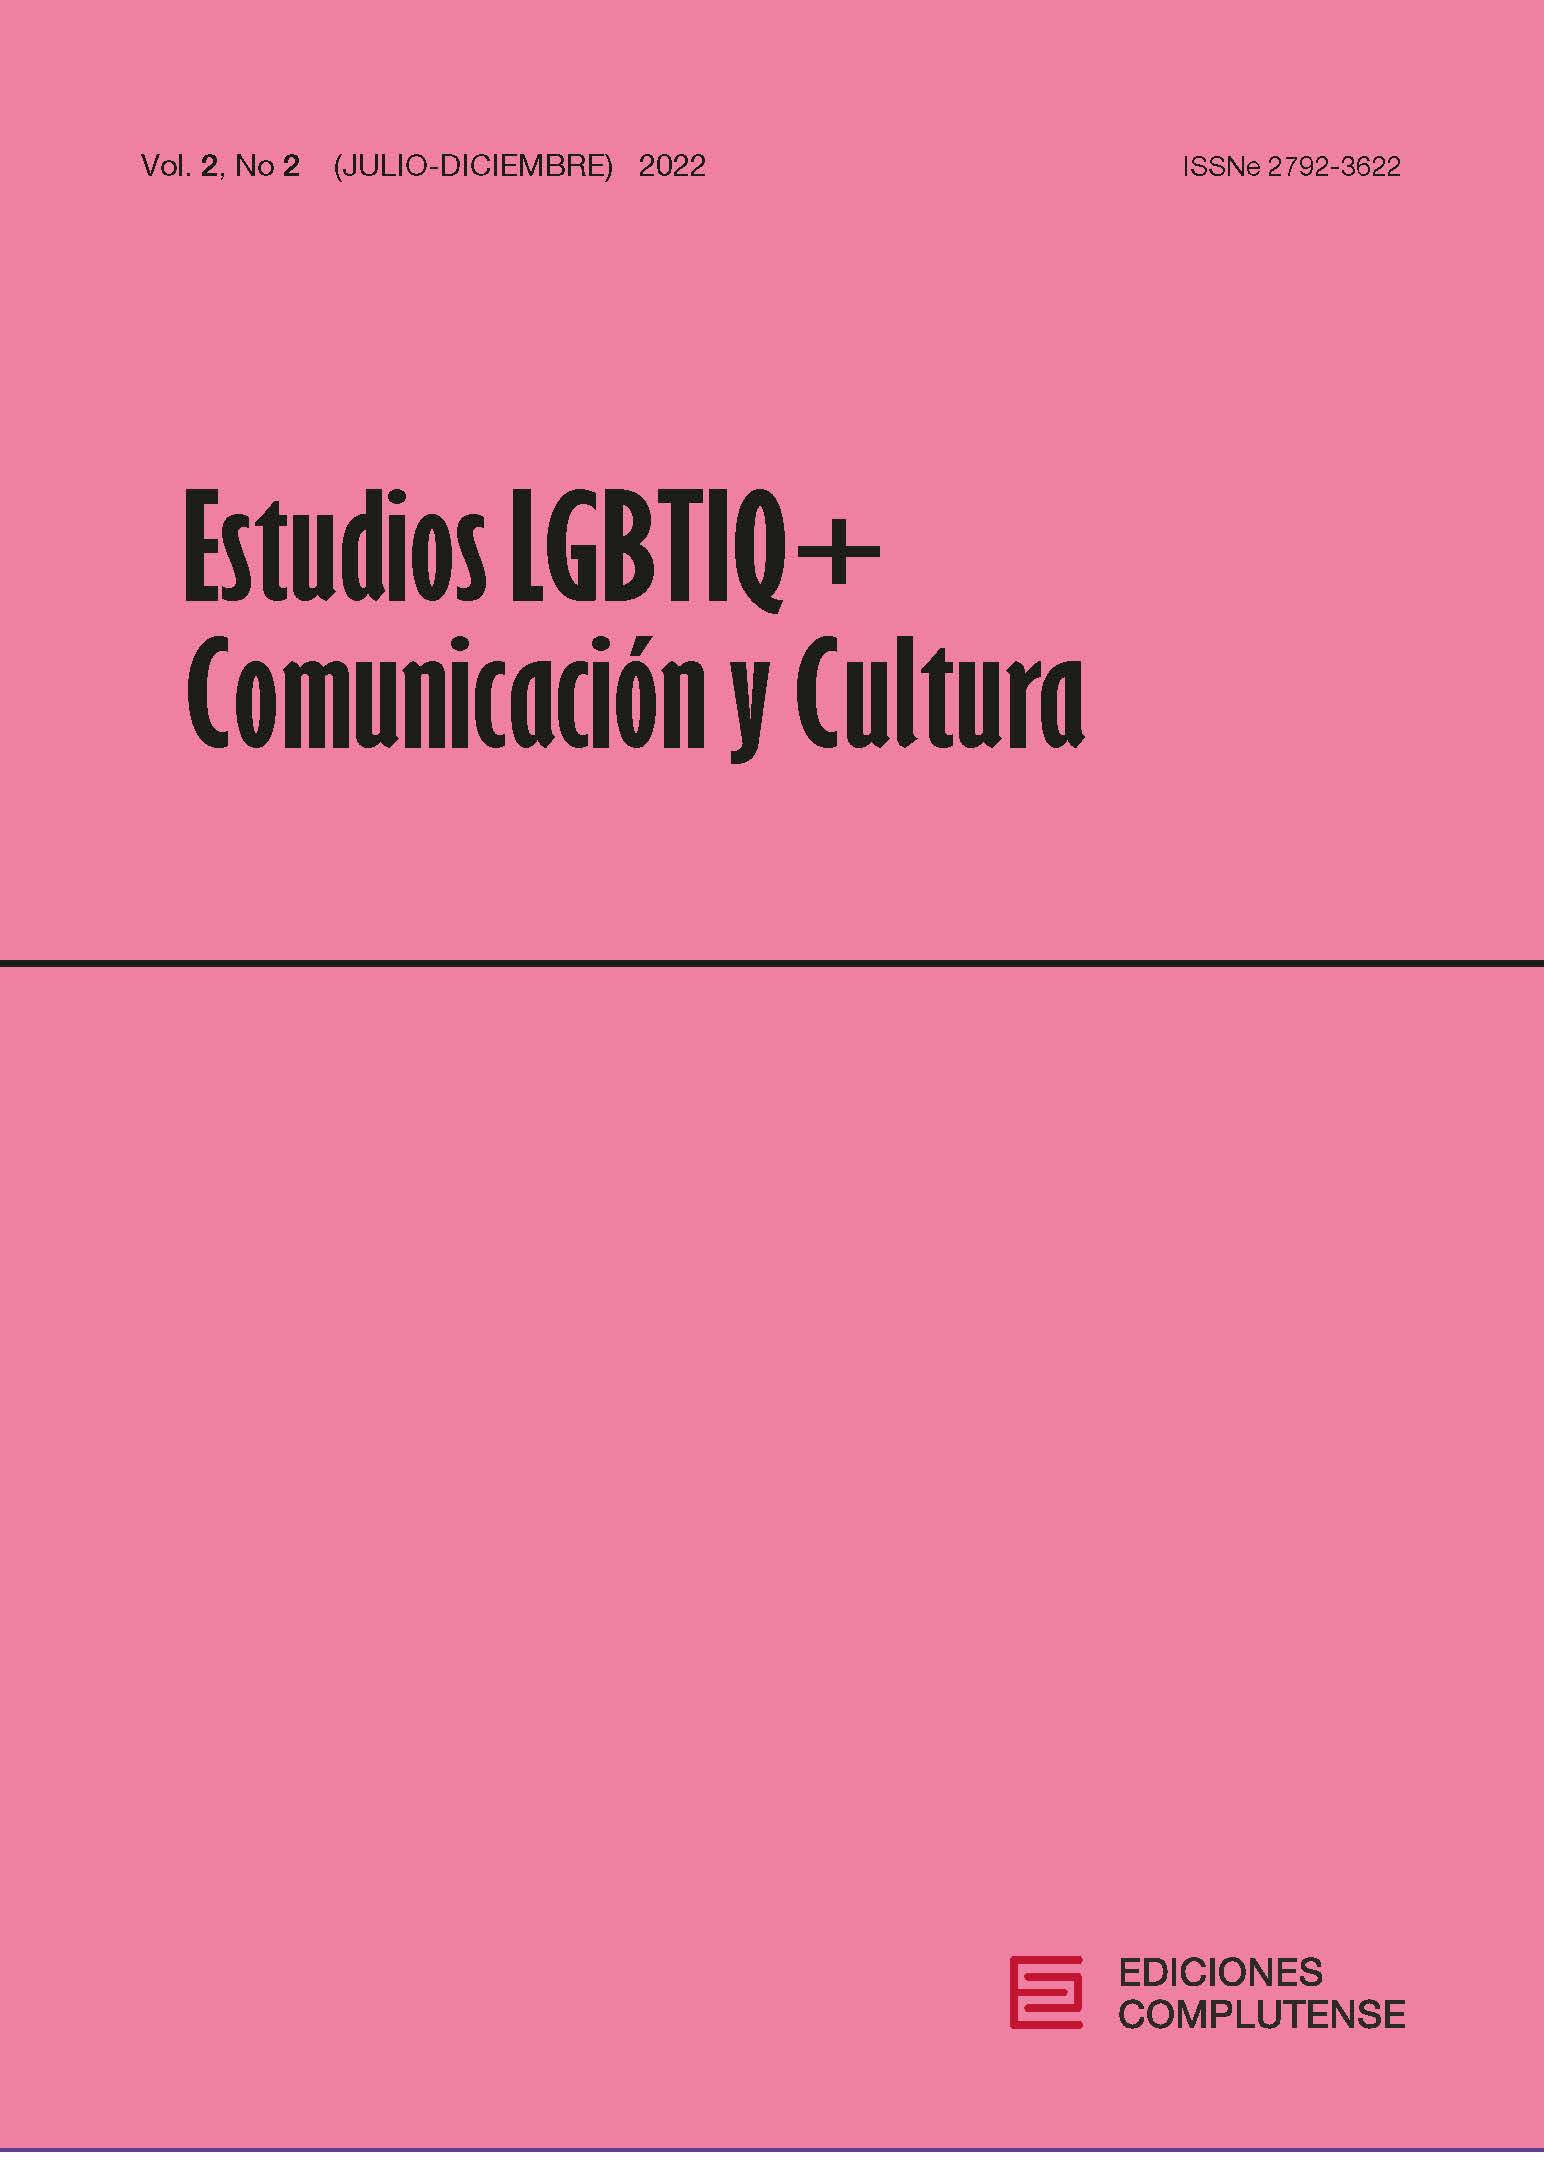 Estudios LGBTIQ+, Comunicación y Cultura 2(2) 2022